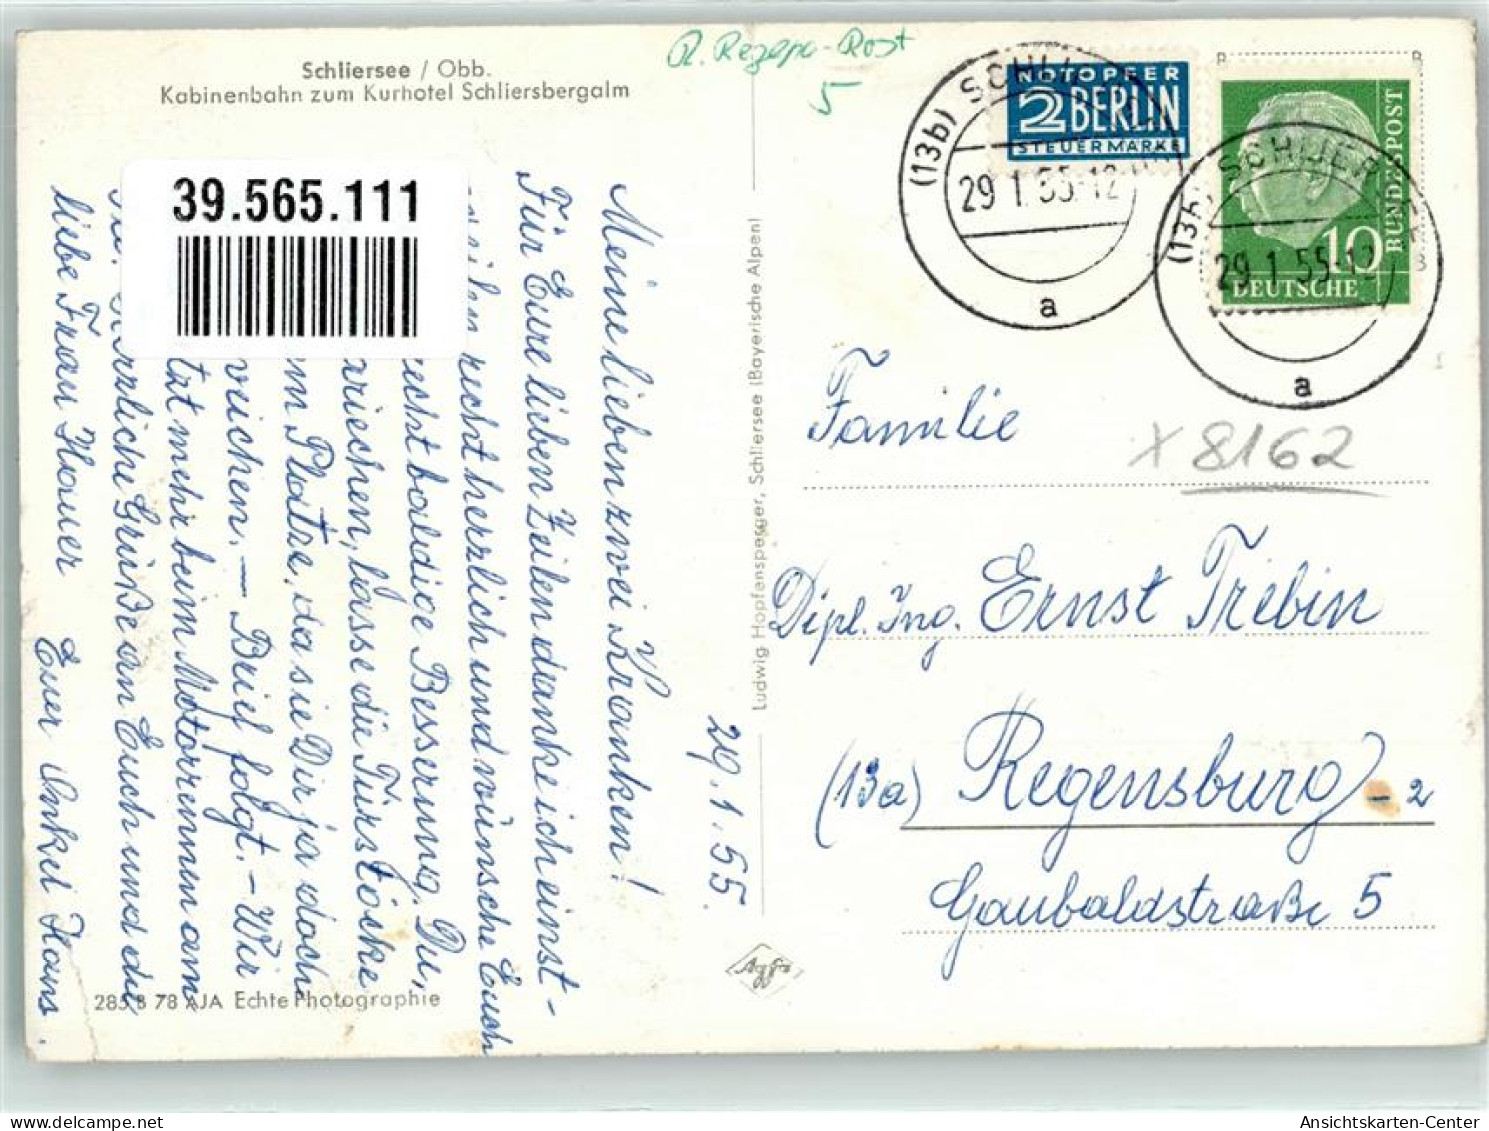 39565111 - Schliersee - Schliersee